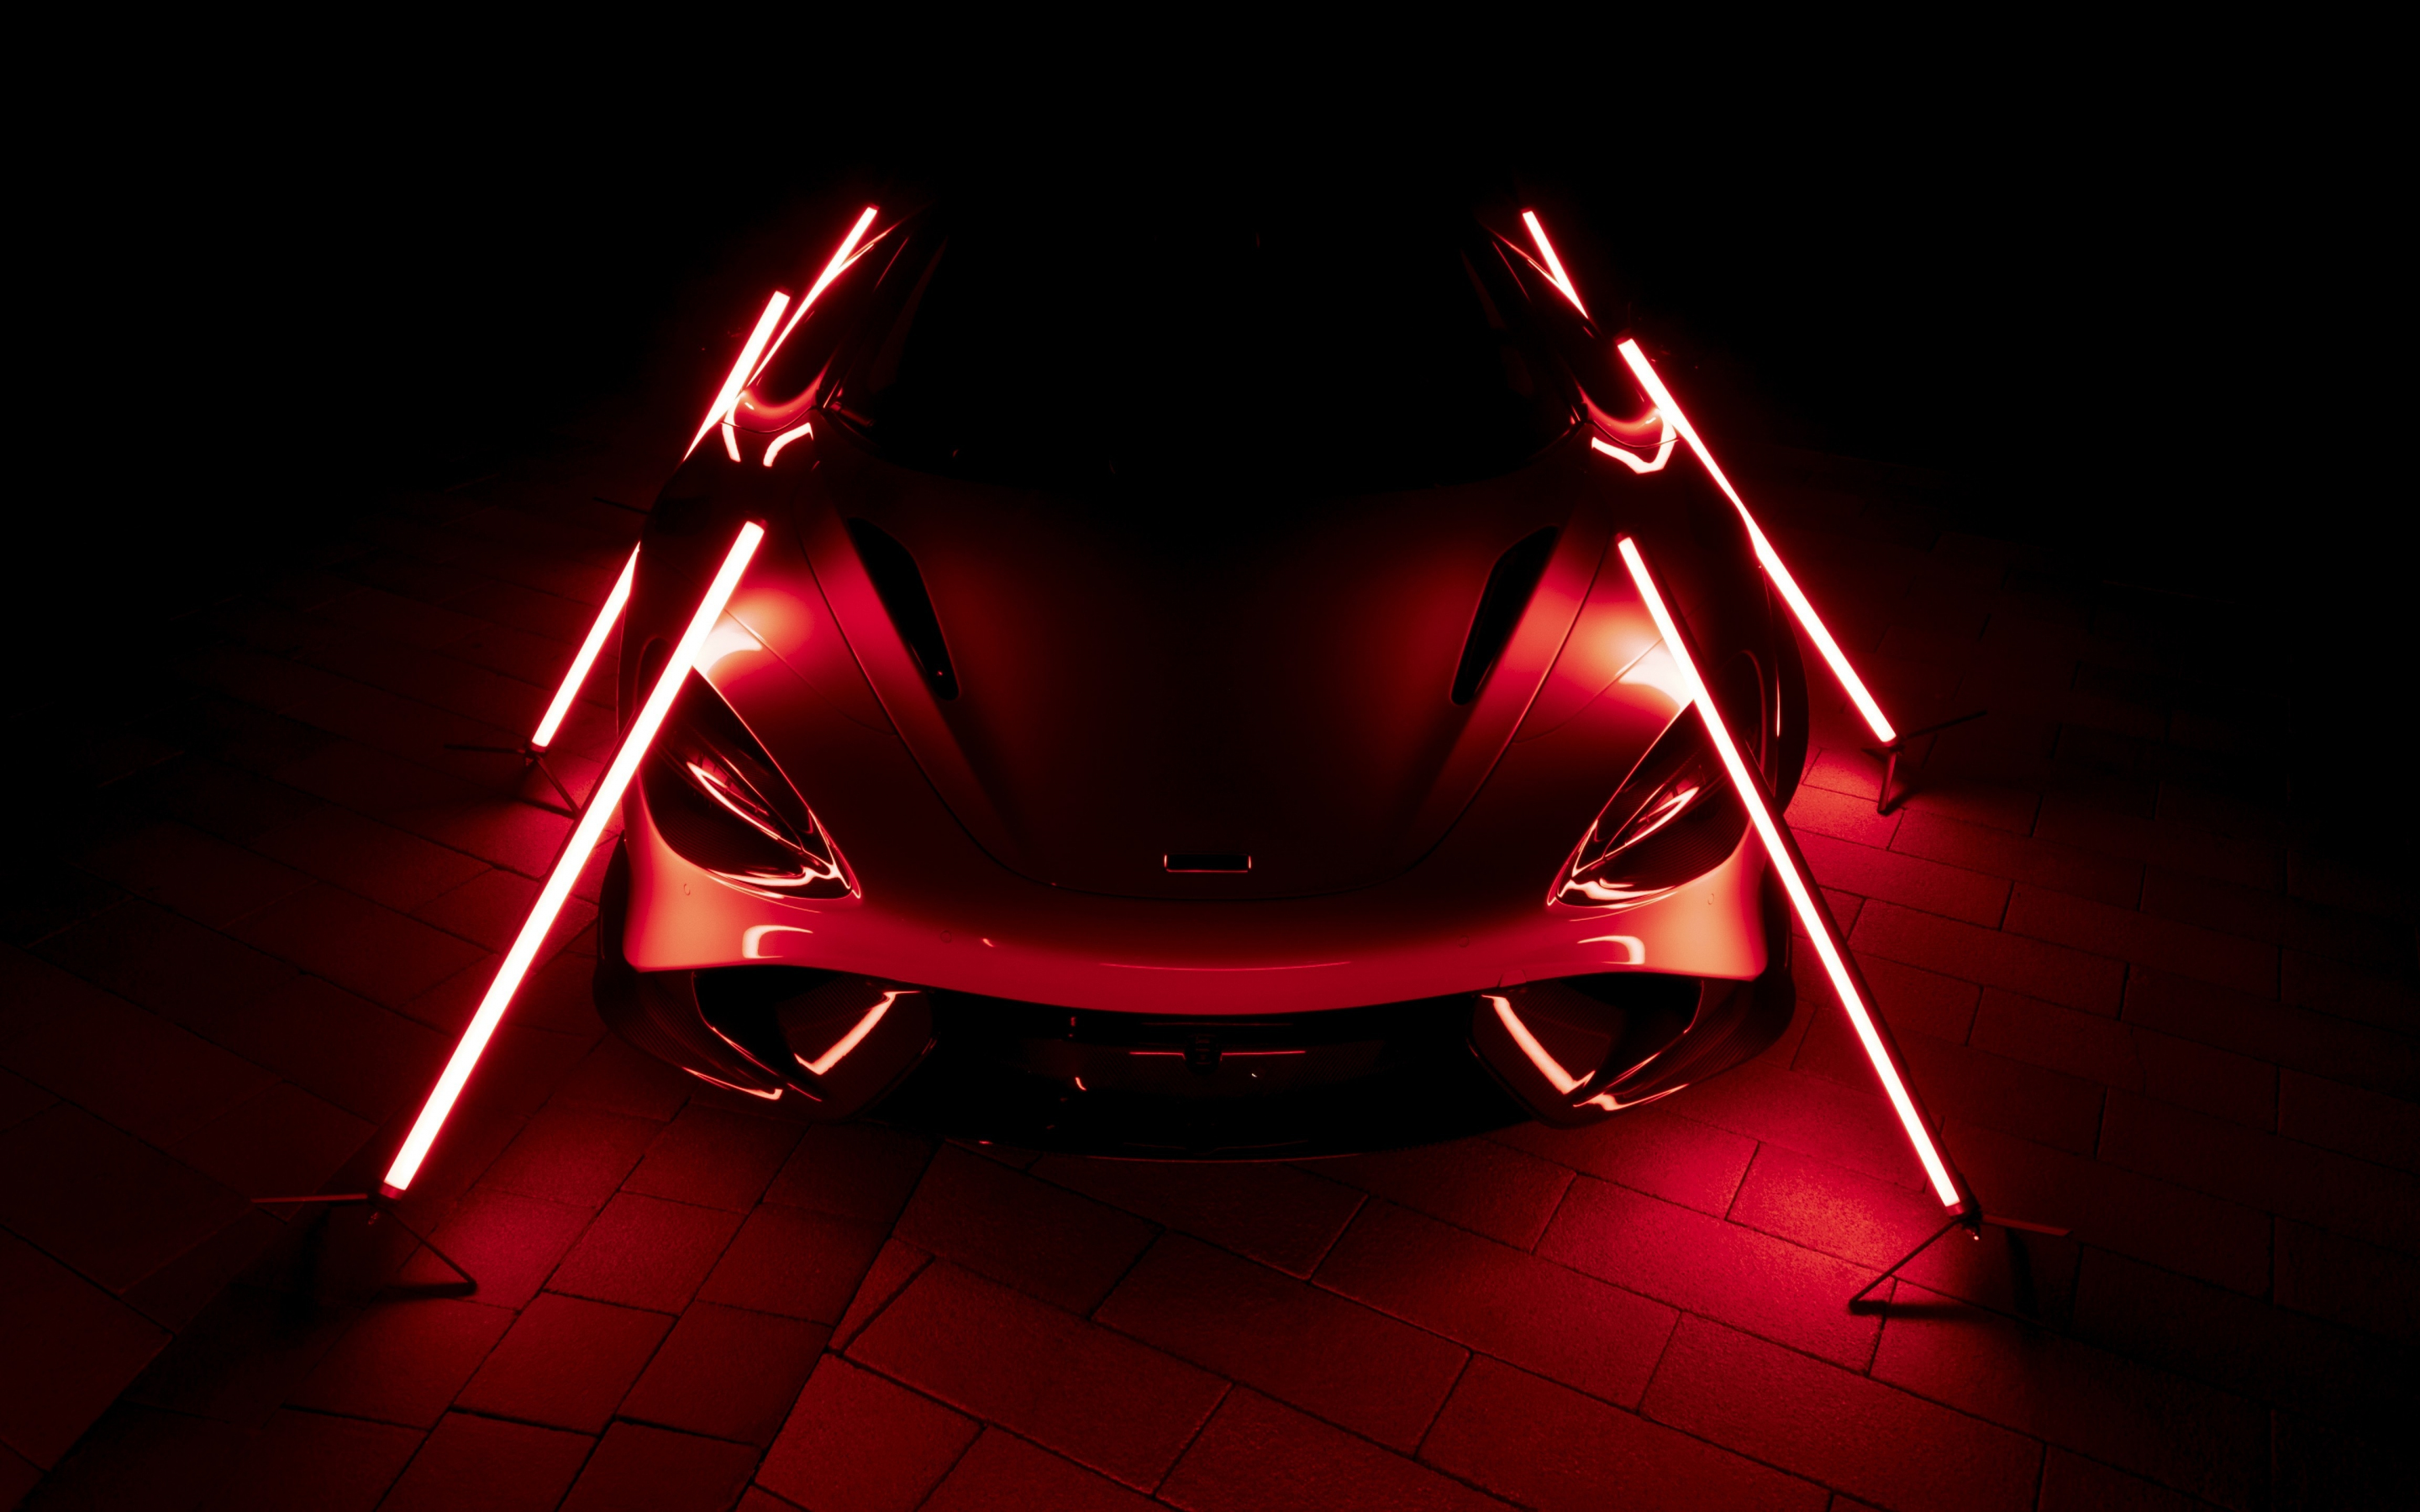 2021 McLaren 765LT, dark, red-glow, car, 2880x1800 wallpaper